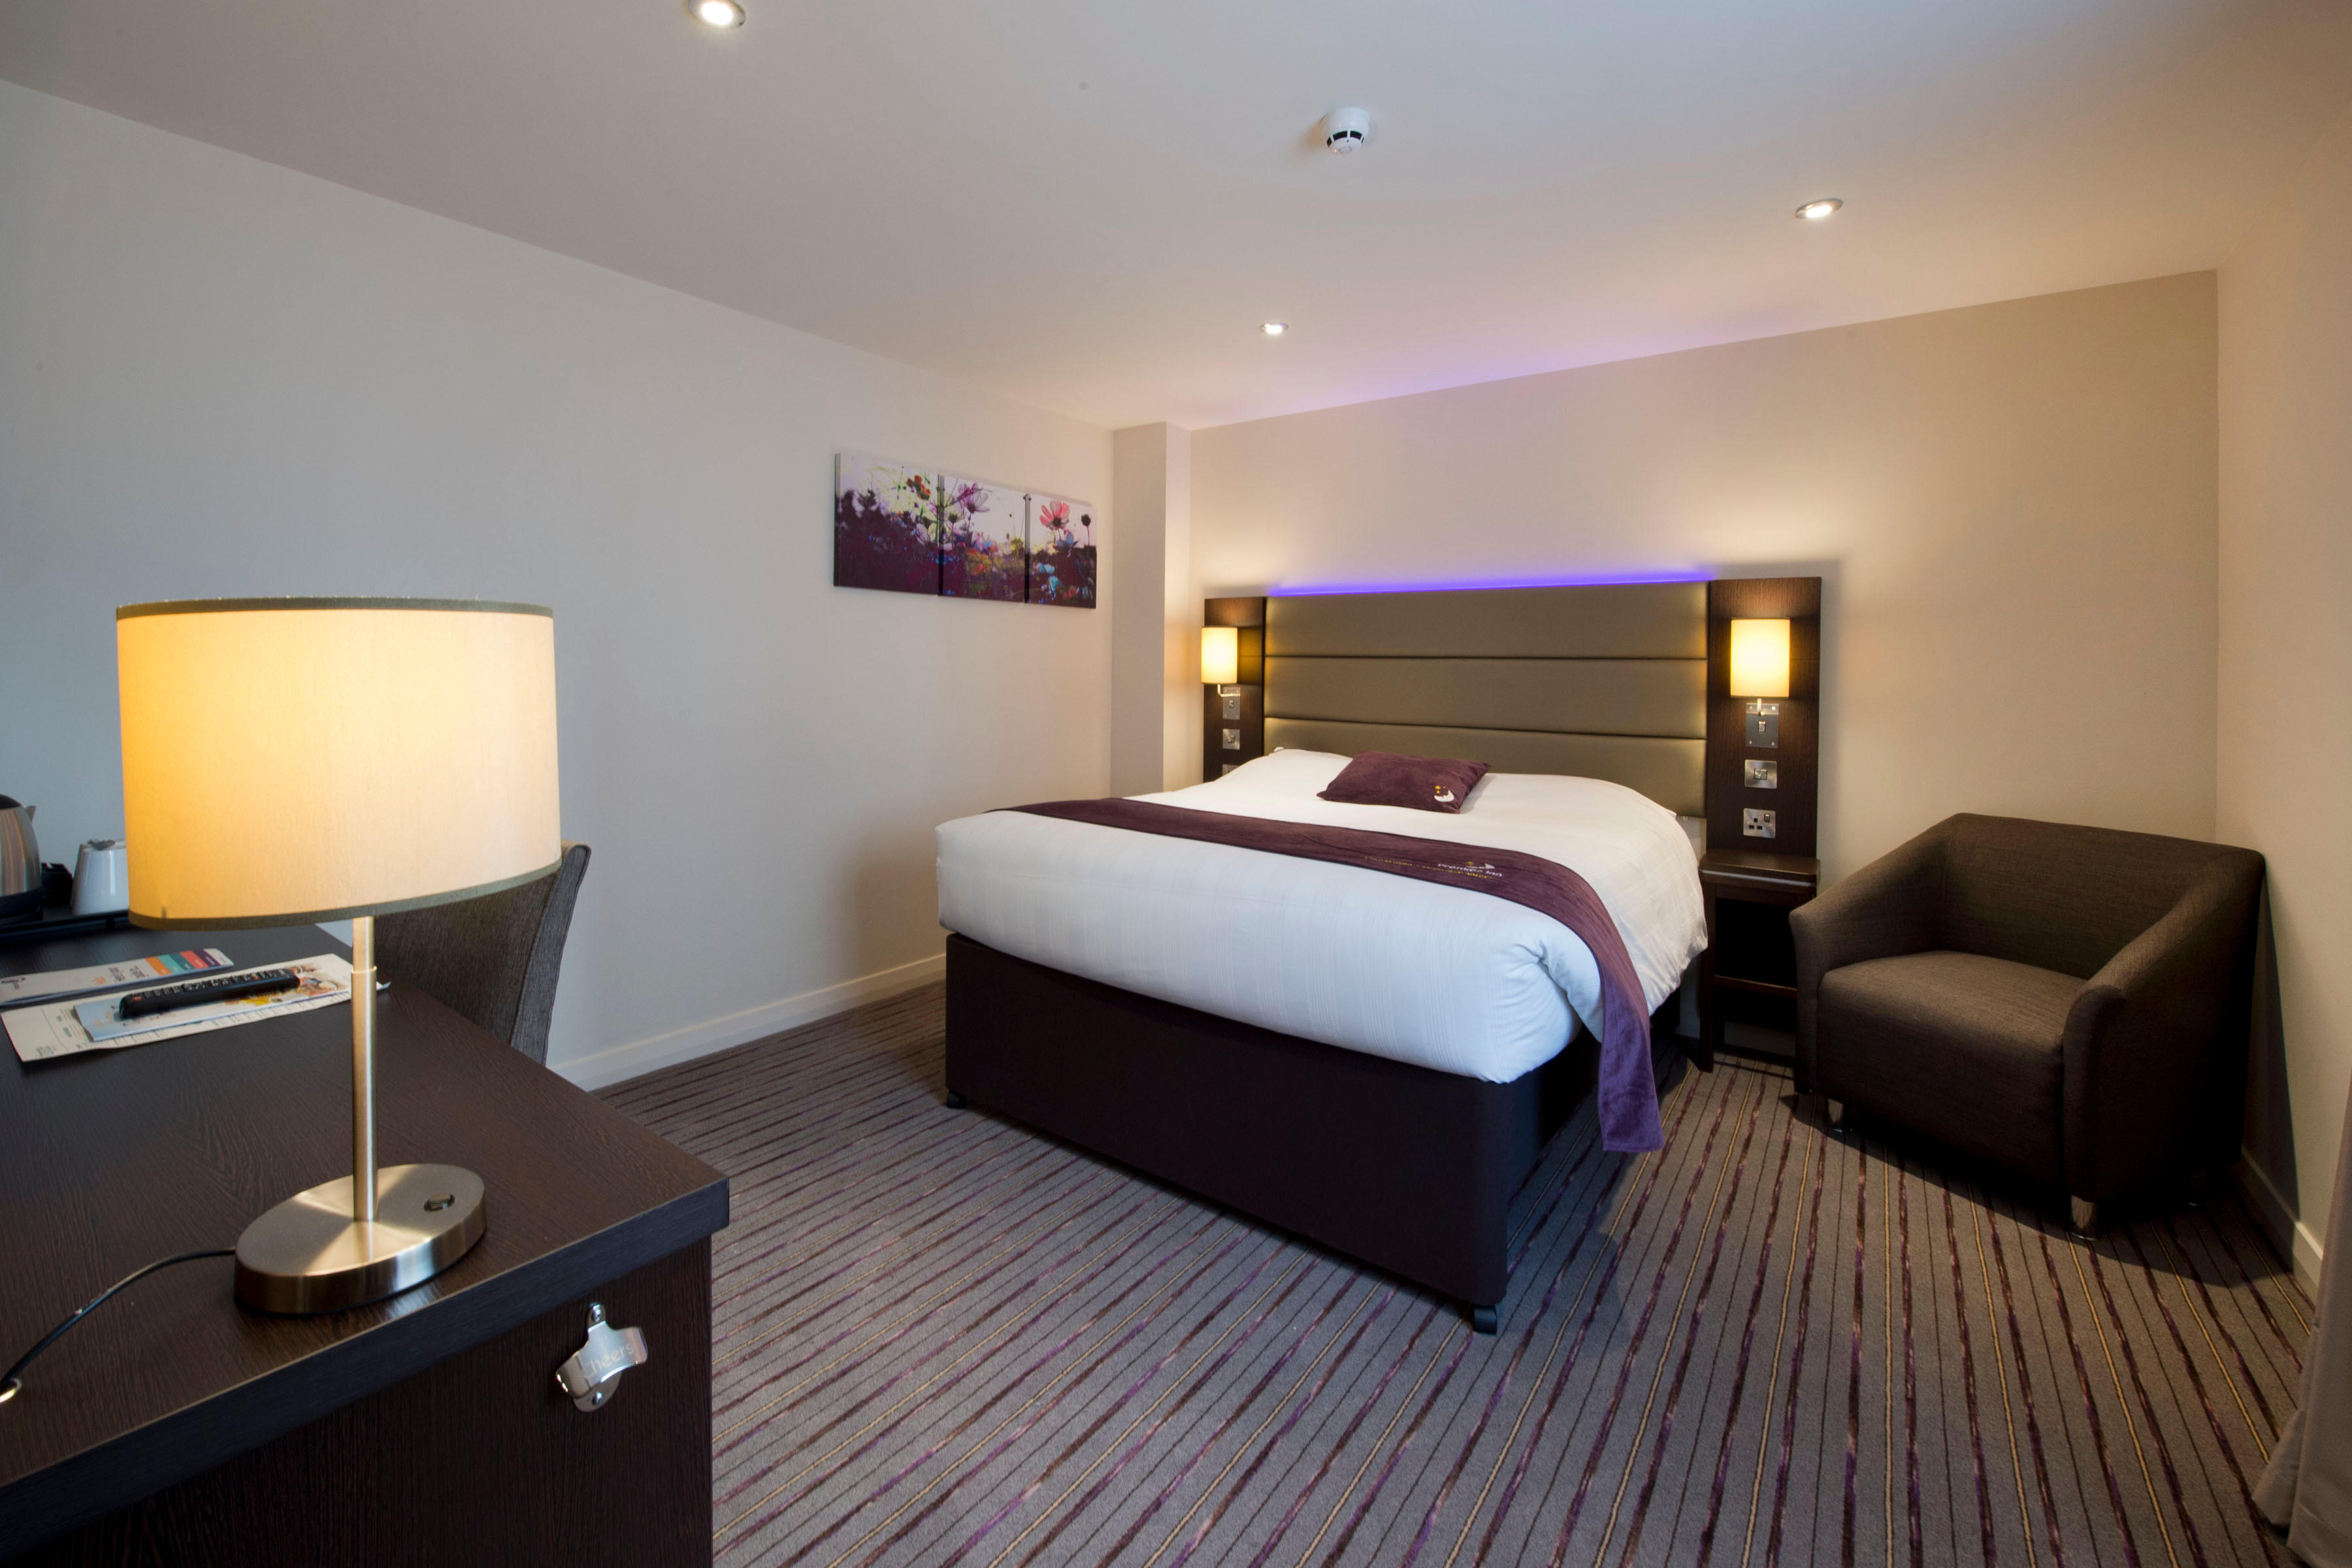 Premier Inn bedroom Premier Inn Leeds City Centre (Whitehall Road) hotel Leeds 03332 346551